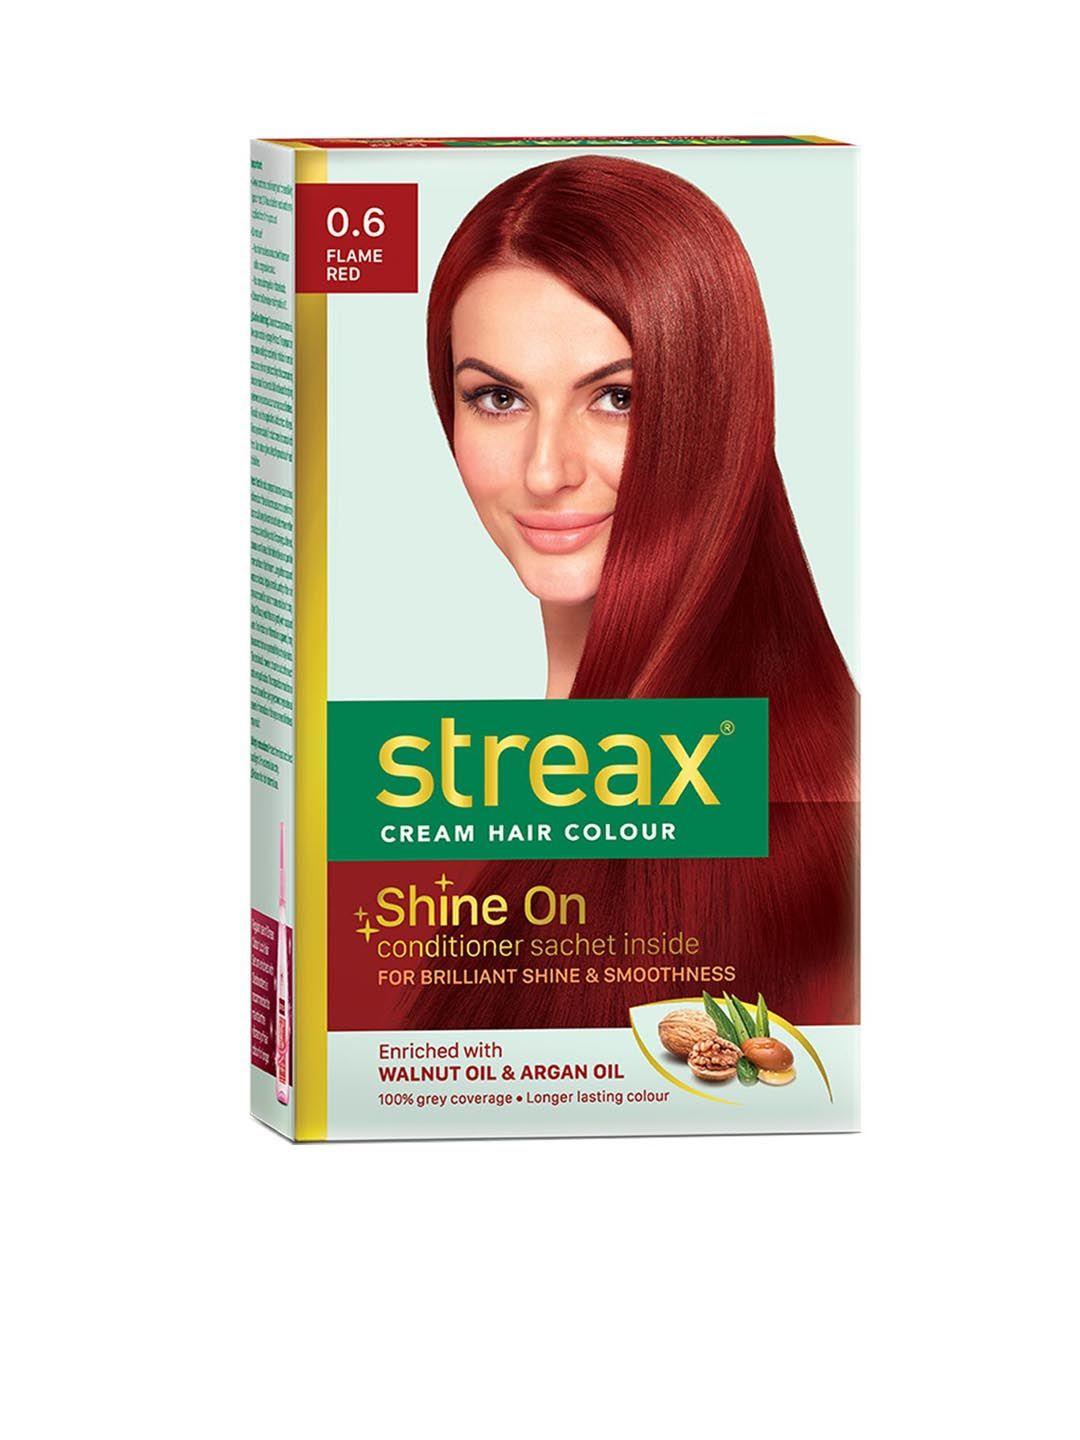 streax cream hair colour - 0.6 flame red 120ml